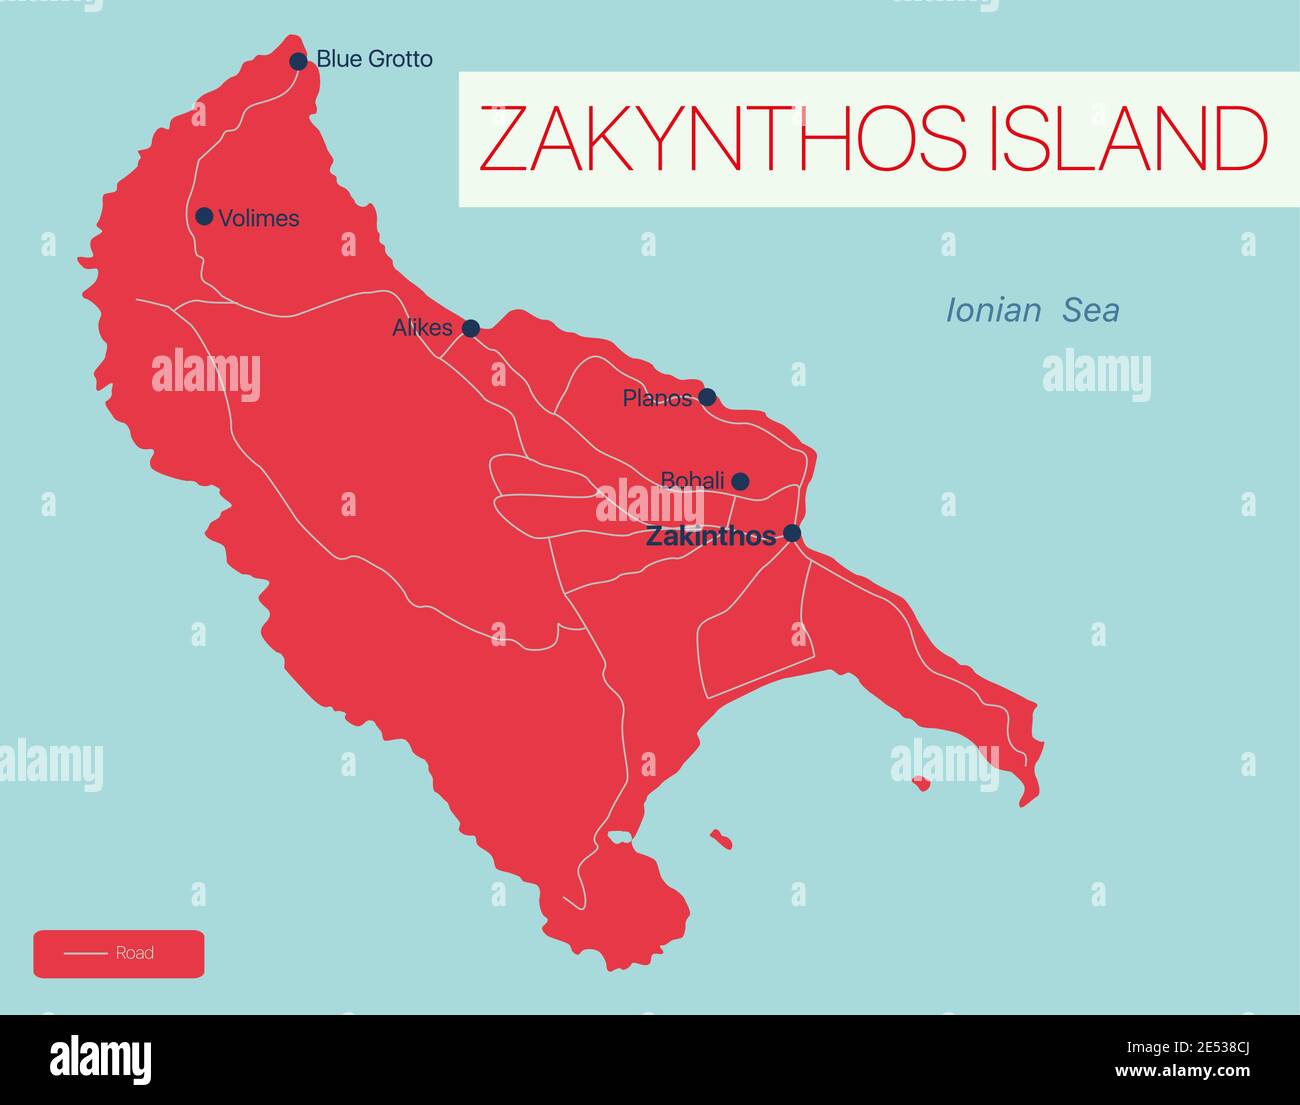 Zakynthos Insel Detaillierte editierbare Karte mit Regionen Städte und Städte, Straßen und Eisenbahnen, geografische Standorte. Vector EPS-10-Datei Stock Vektor